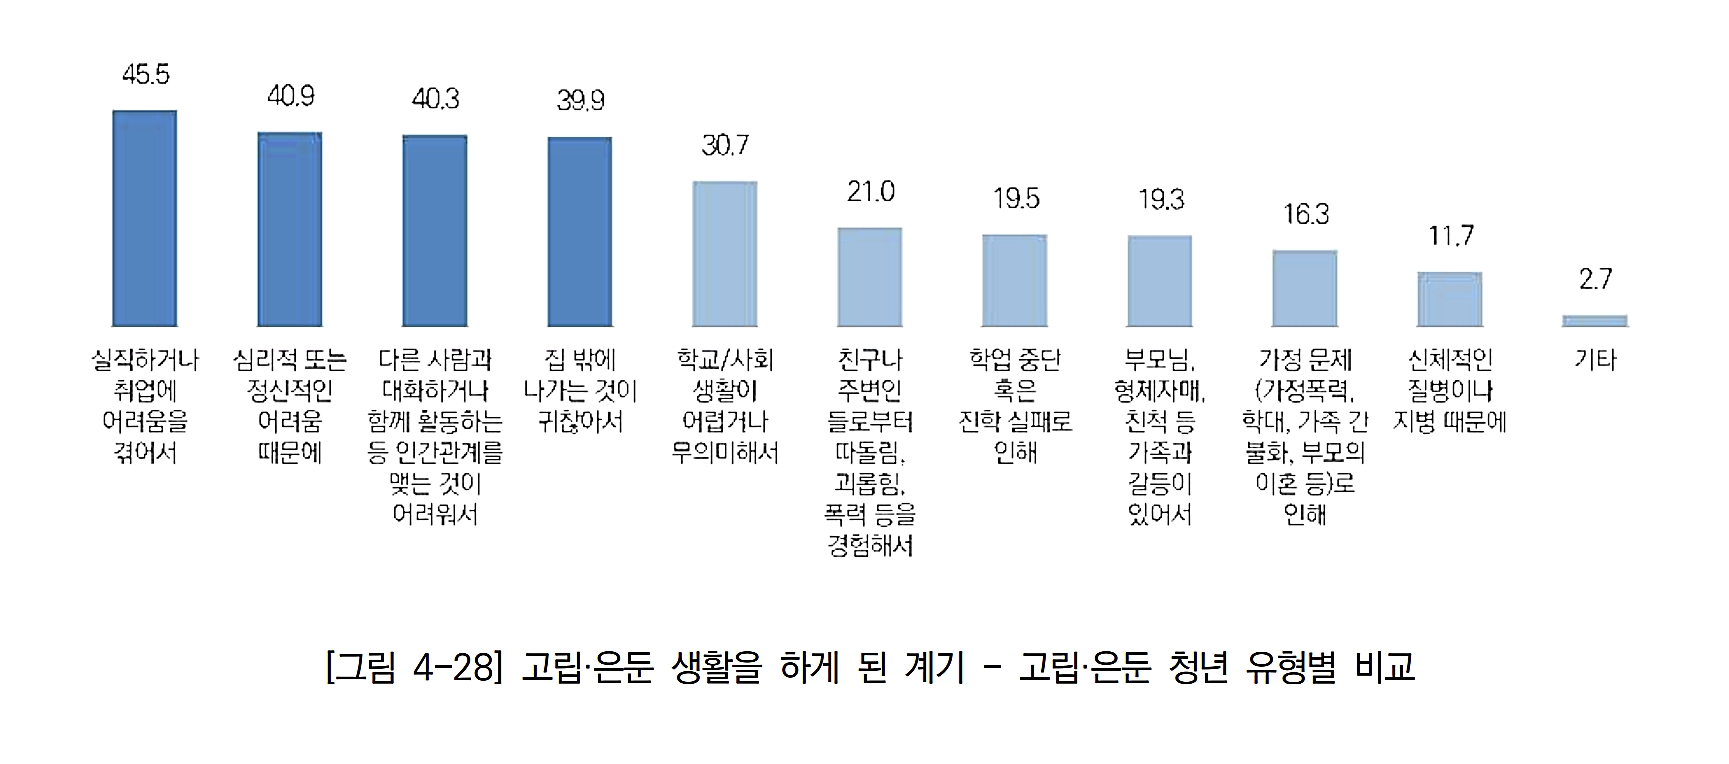 고립 및 은둔 생활을 하게 된 계기. 2023.1.18. 서울시 고립·은둔 청년 실태조사 보고서